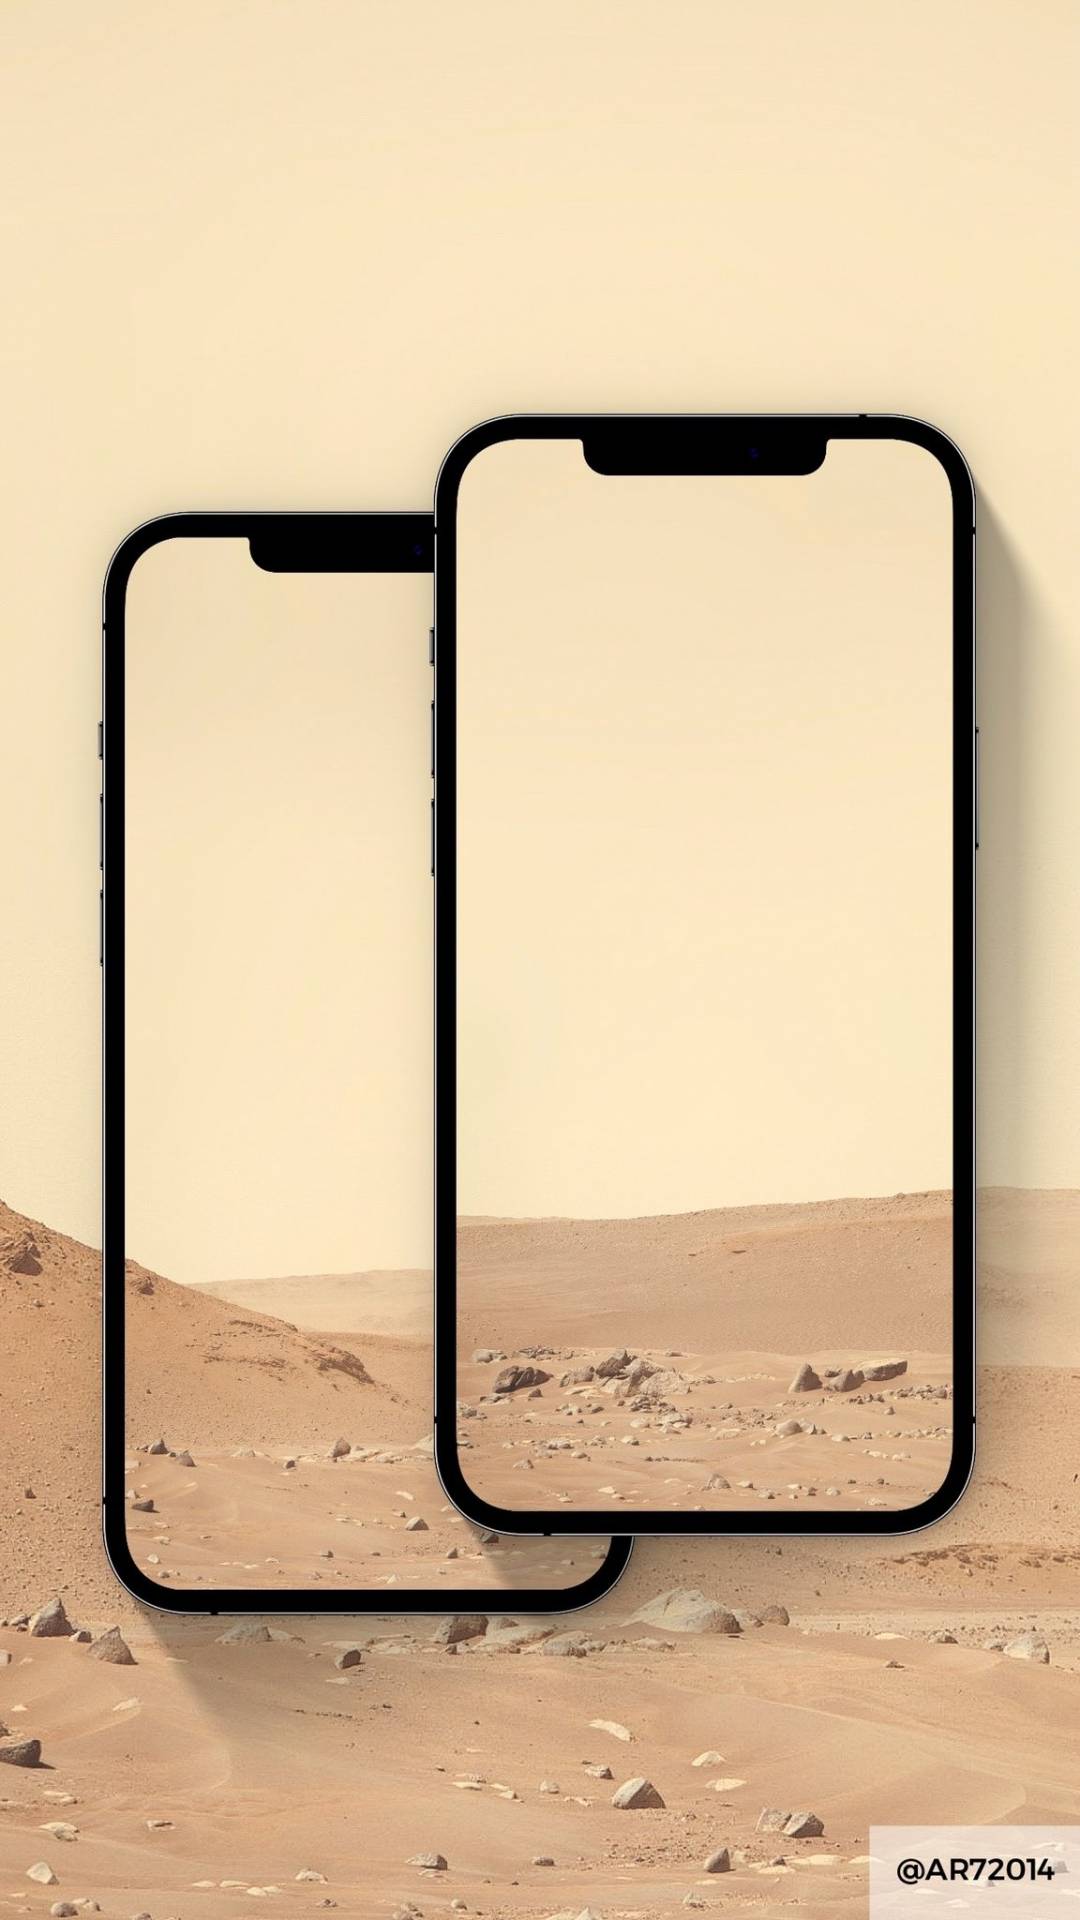 Stiahnite si na iPhone pozadie priamo z Marsu!